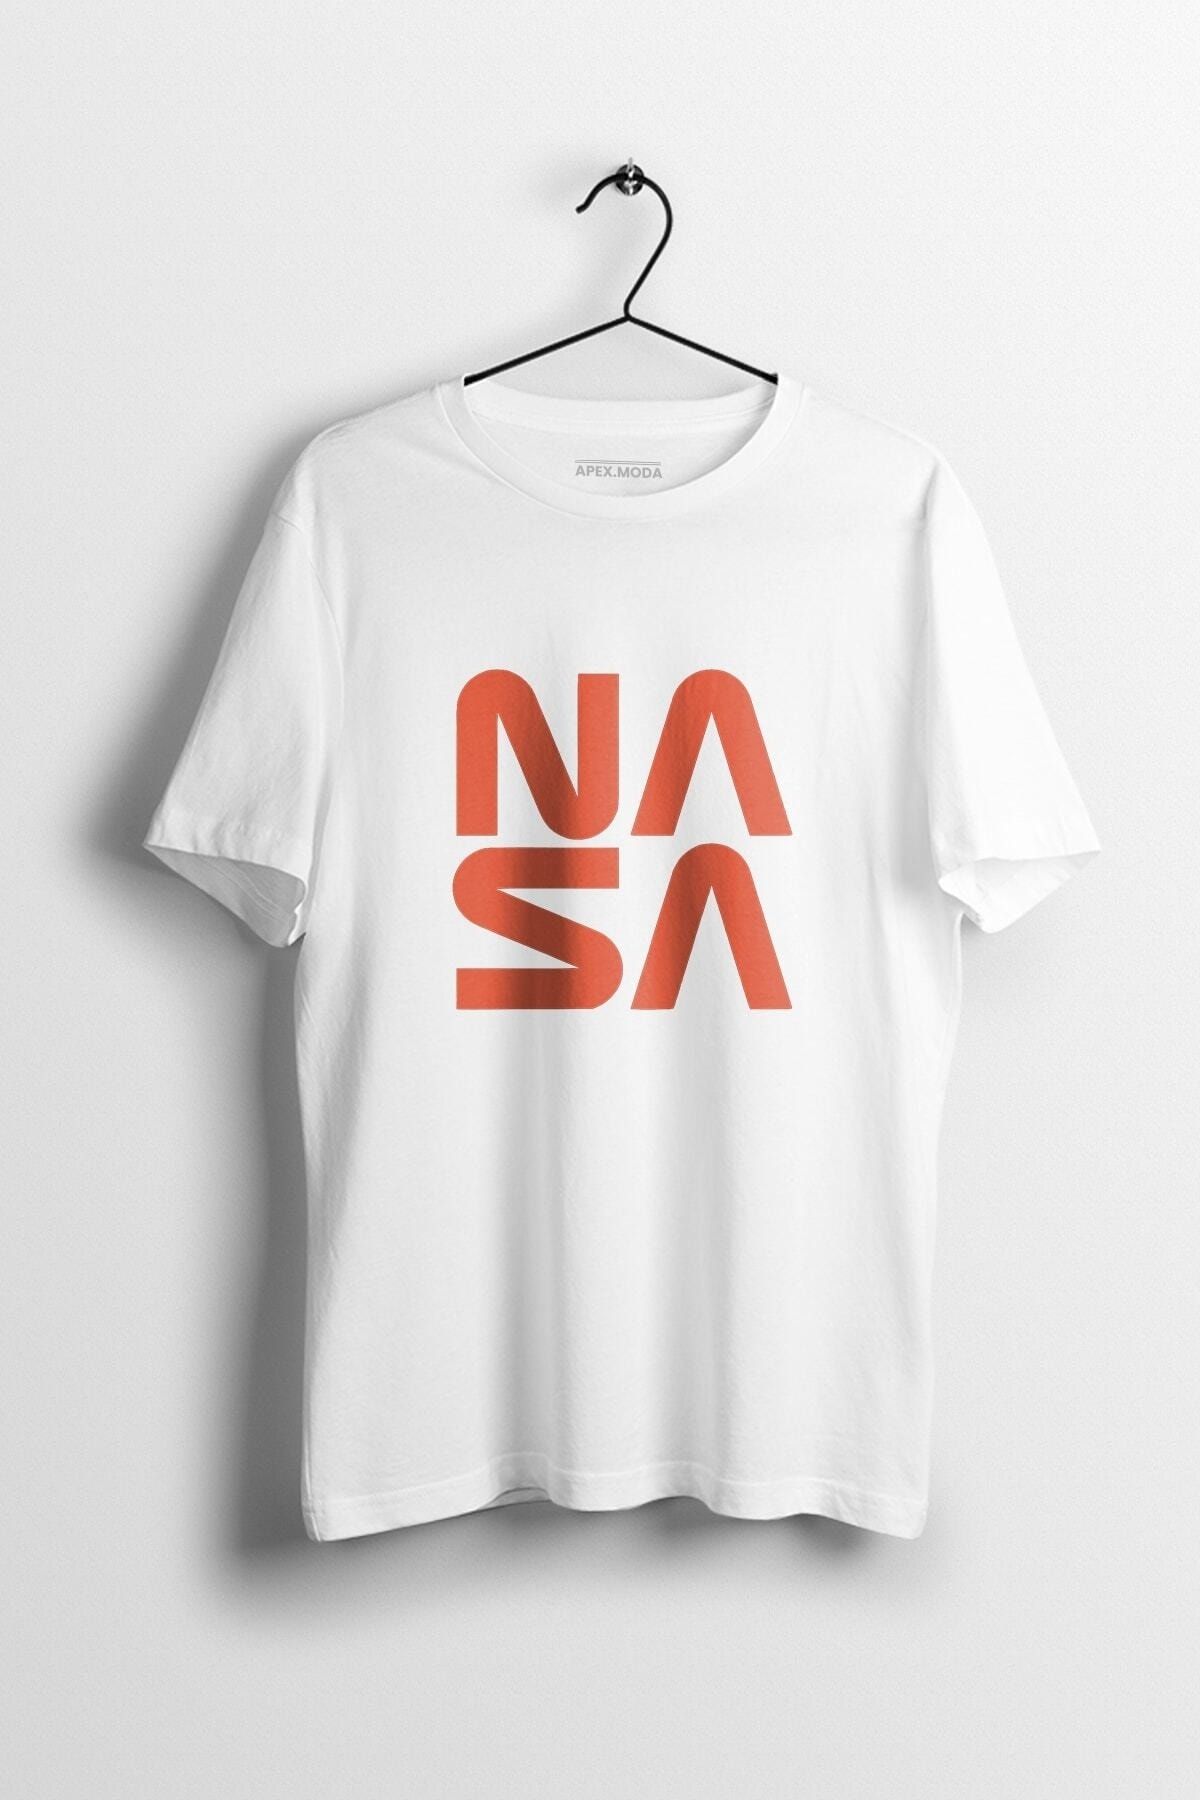 WePOD Nasa Square Baskılı Tişört Baskılı Beyaz Kısa Kollu Unisex Tişört